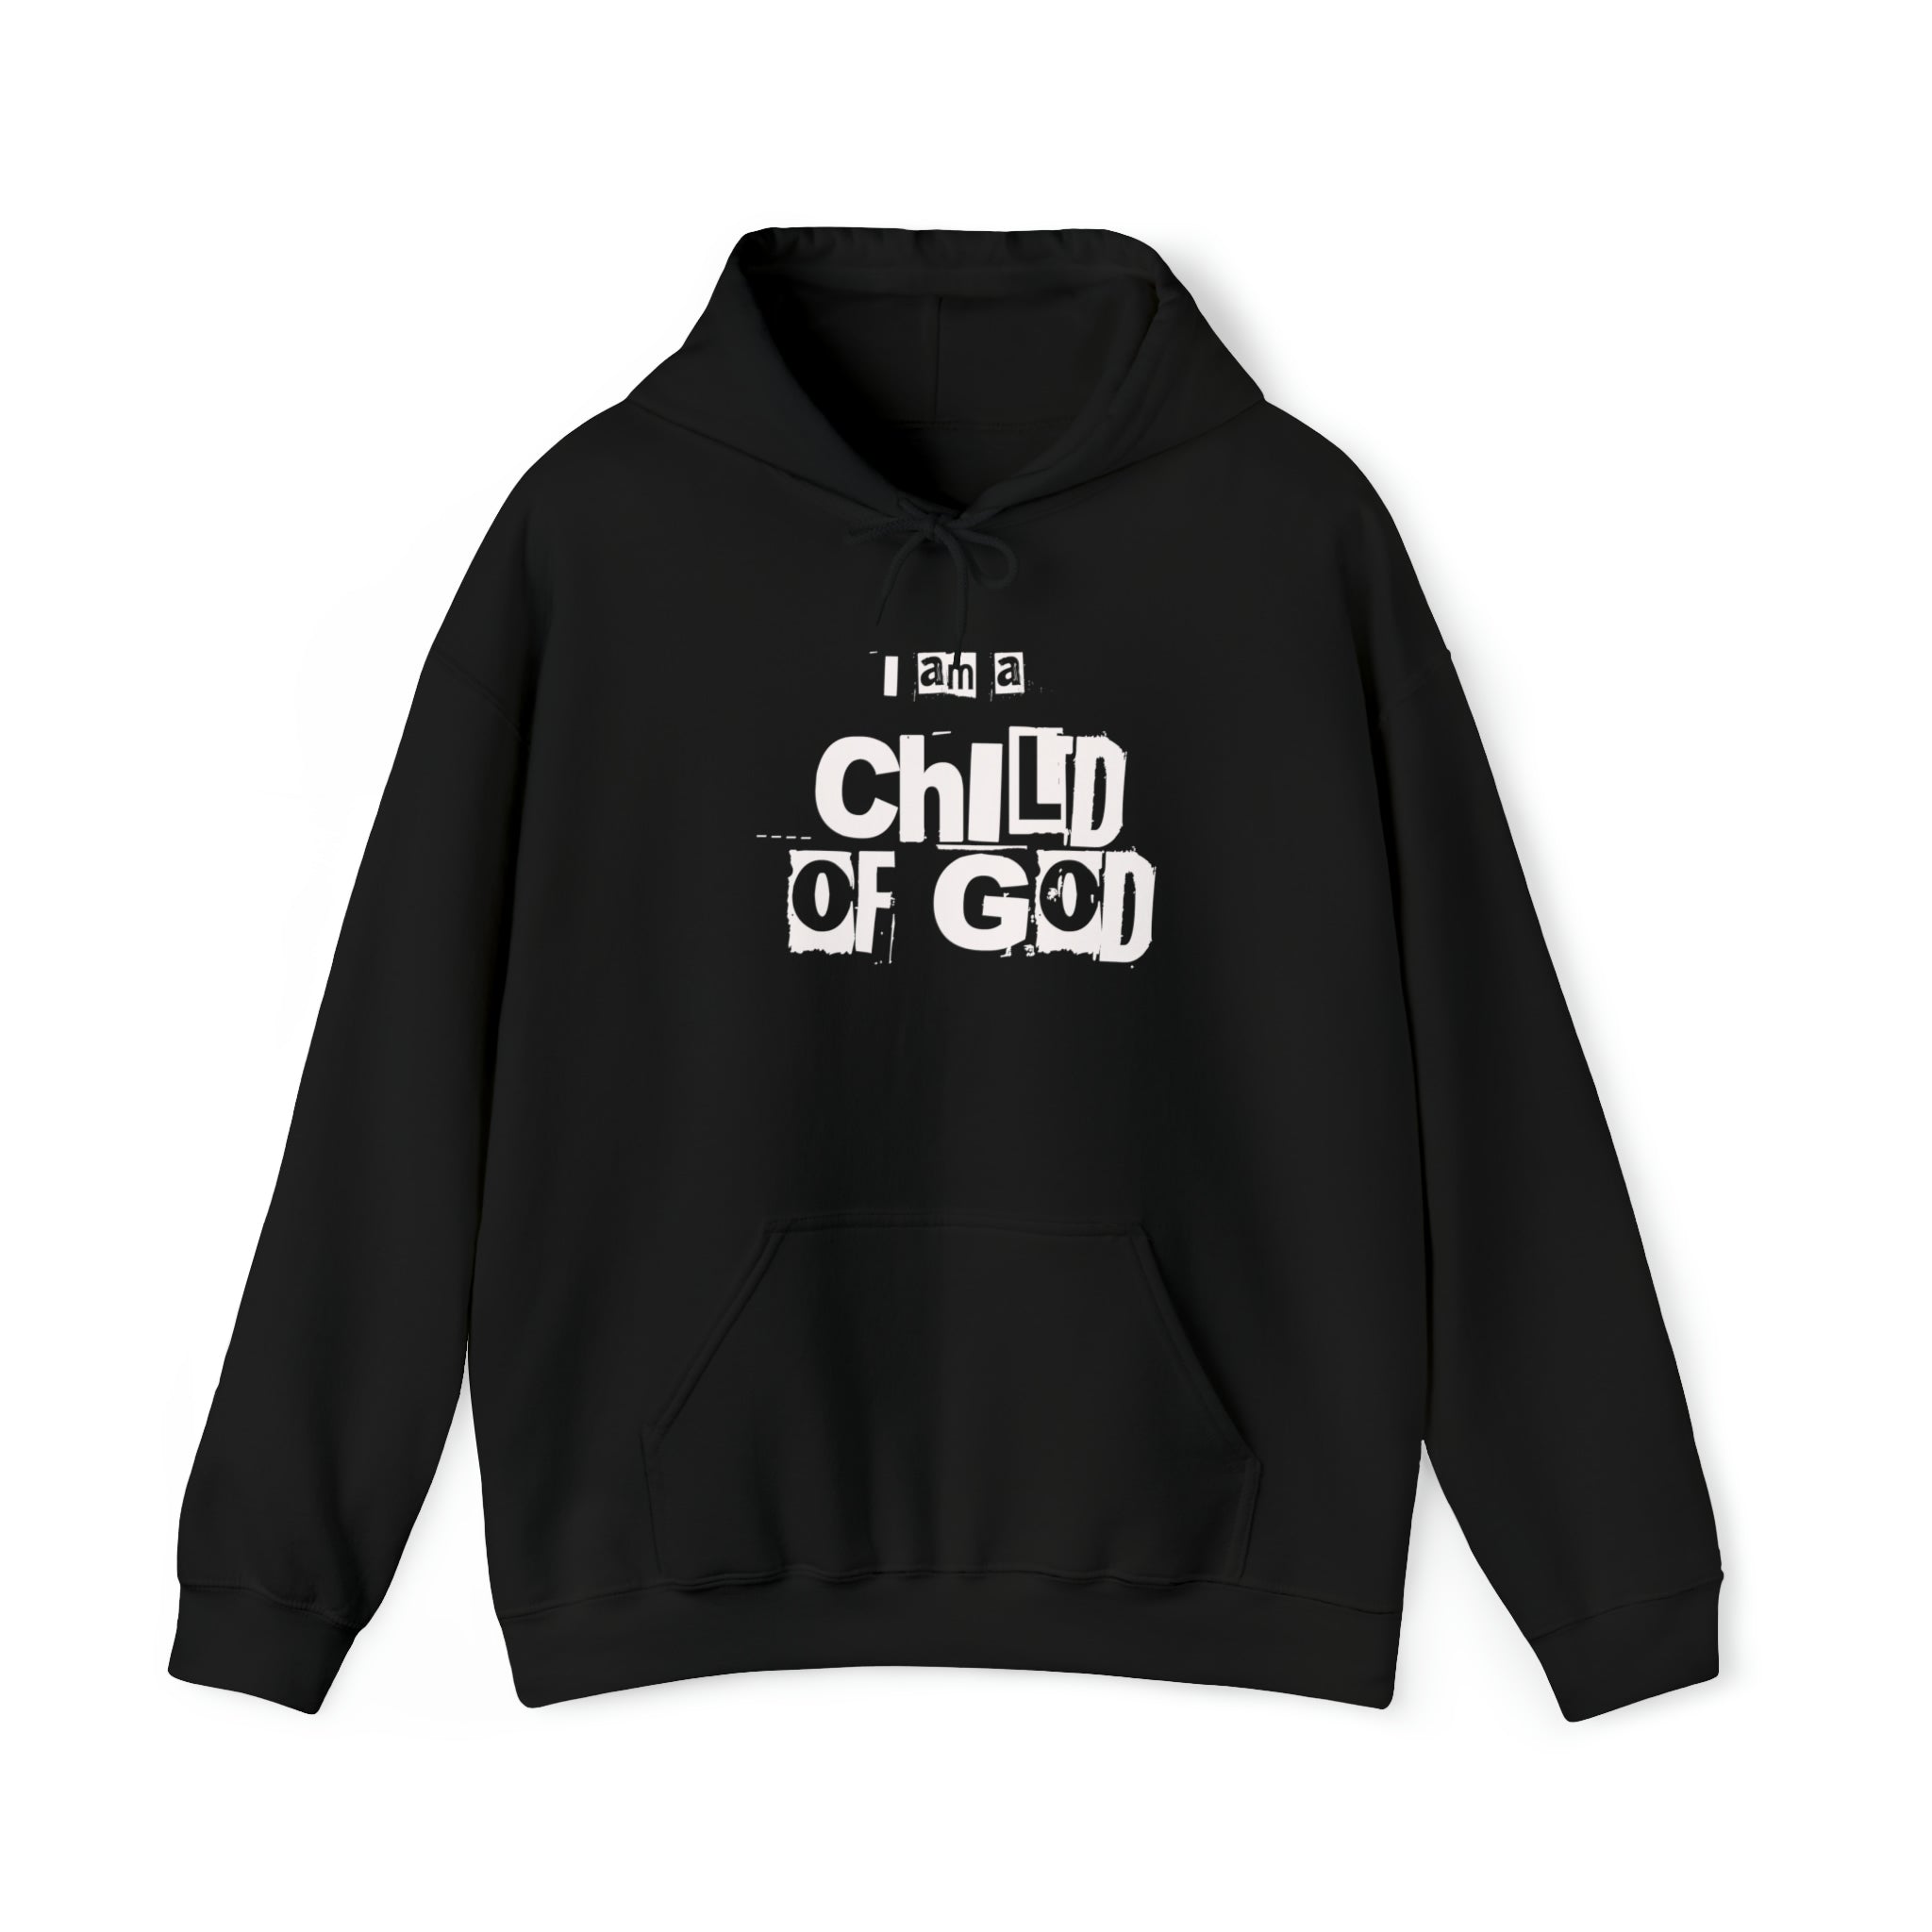 Child of God Christian Faith Unisex Hoodie